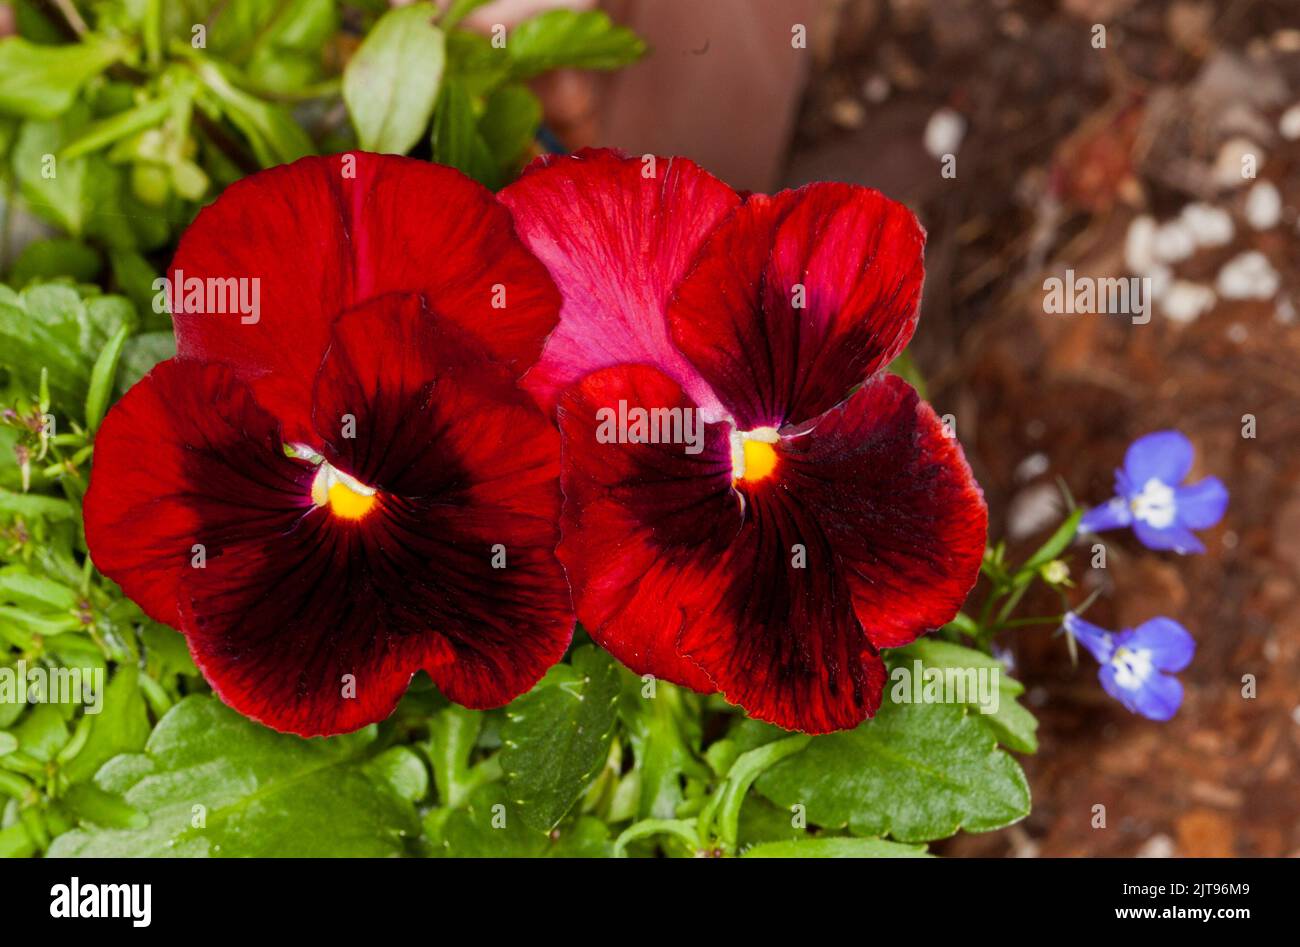 Superbes grandes fleurs rouges sombres de Pansy, une floraison annuelle, sur fond de feuilles vertes émeraude Banque D'Images